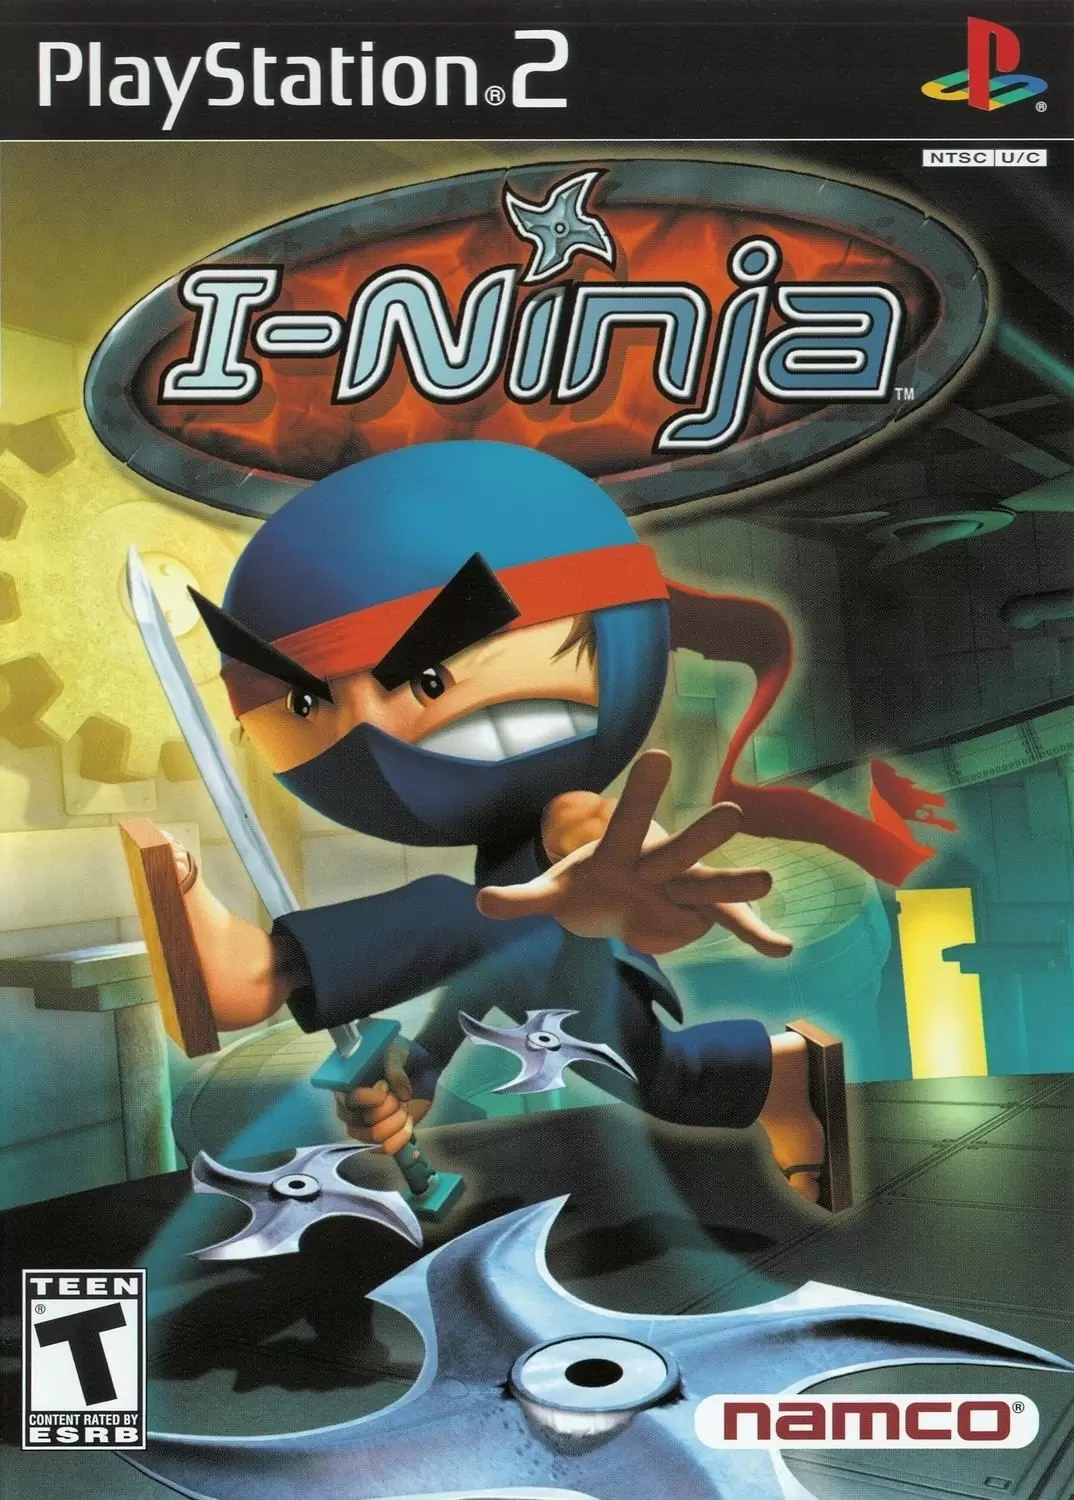 PS2 Games - I-Ninja